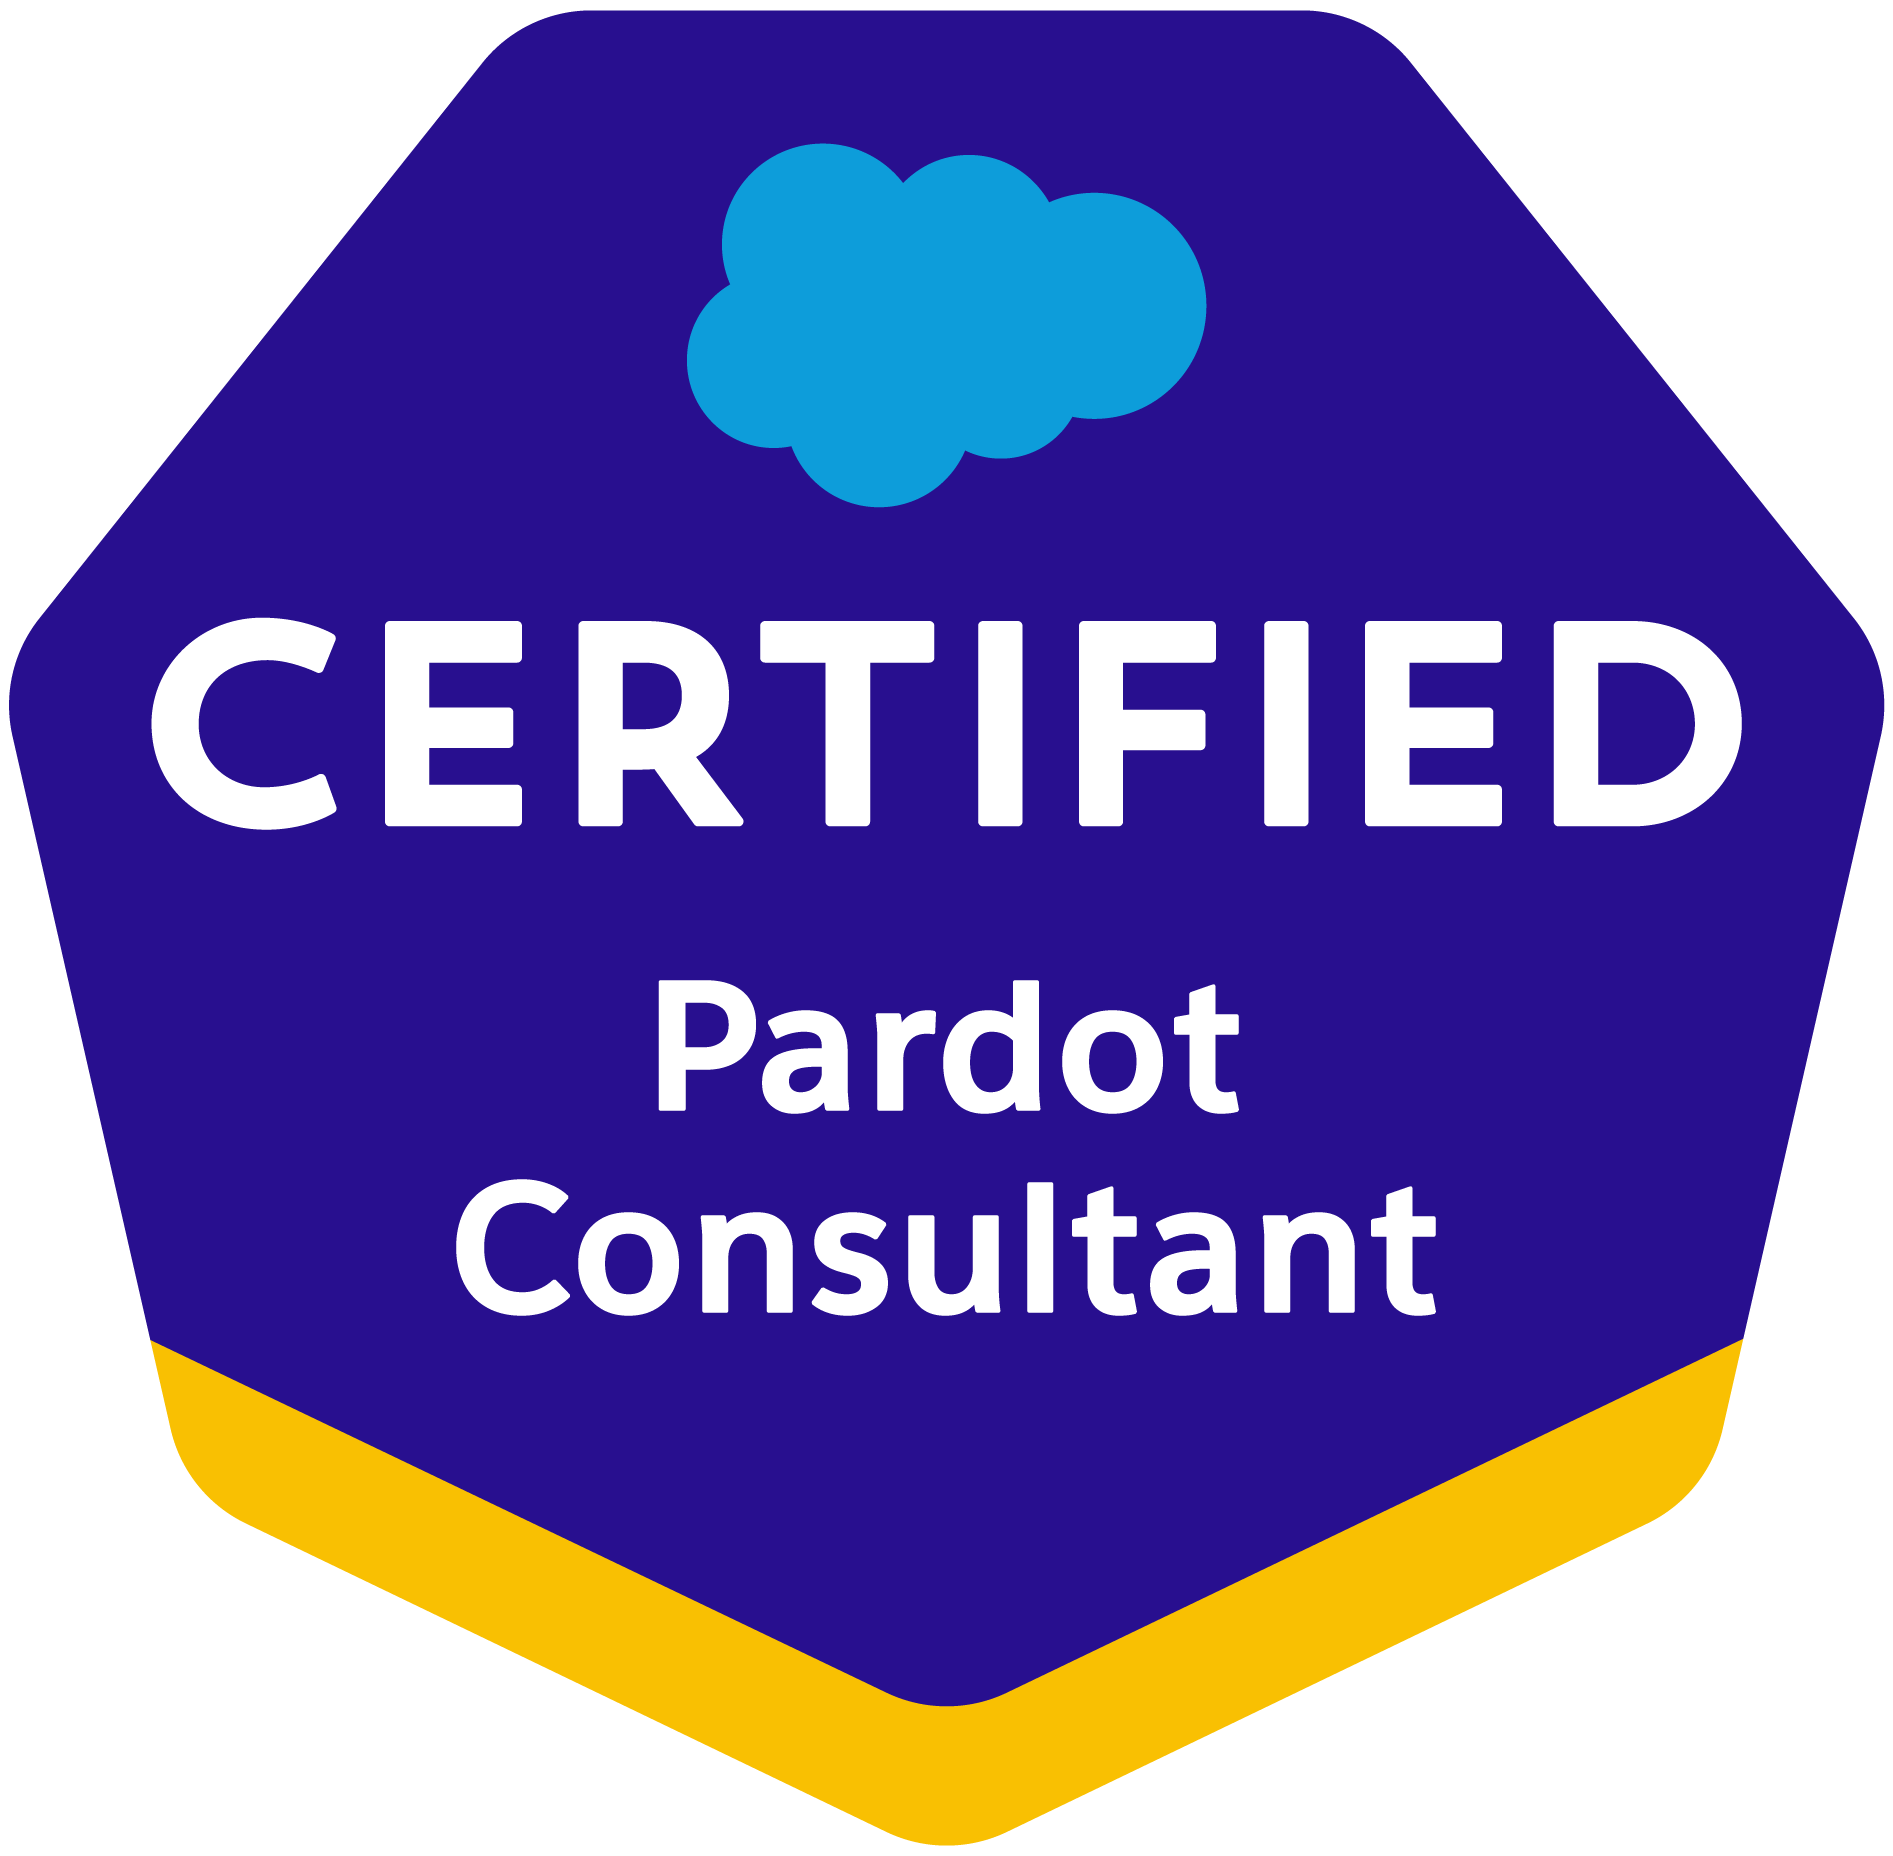 Pardot Consultant